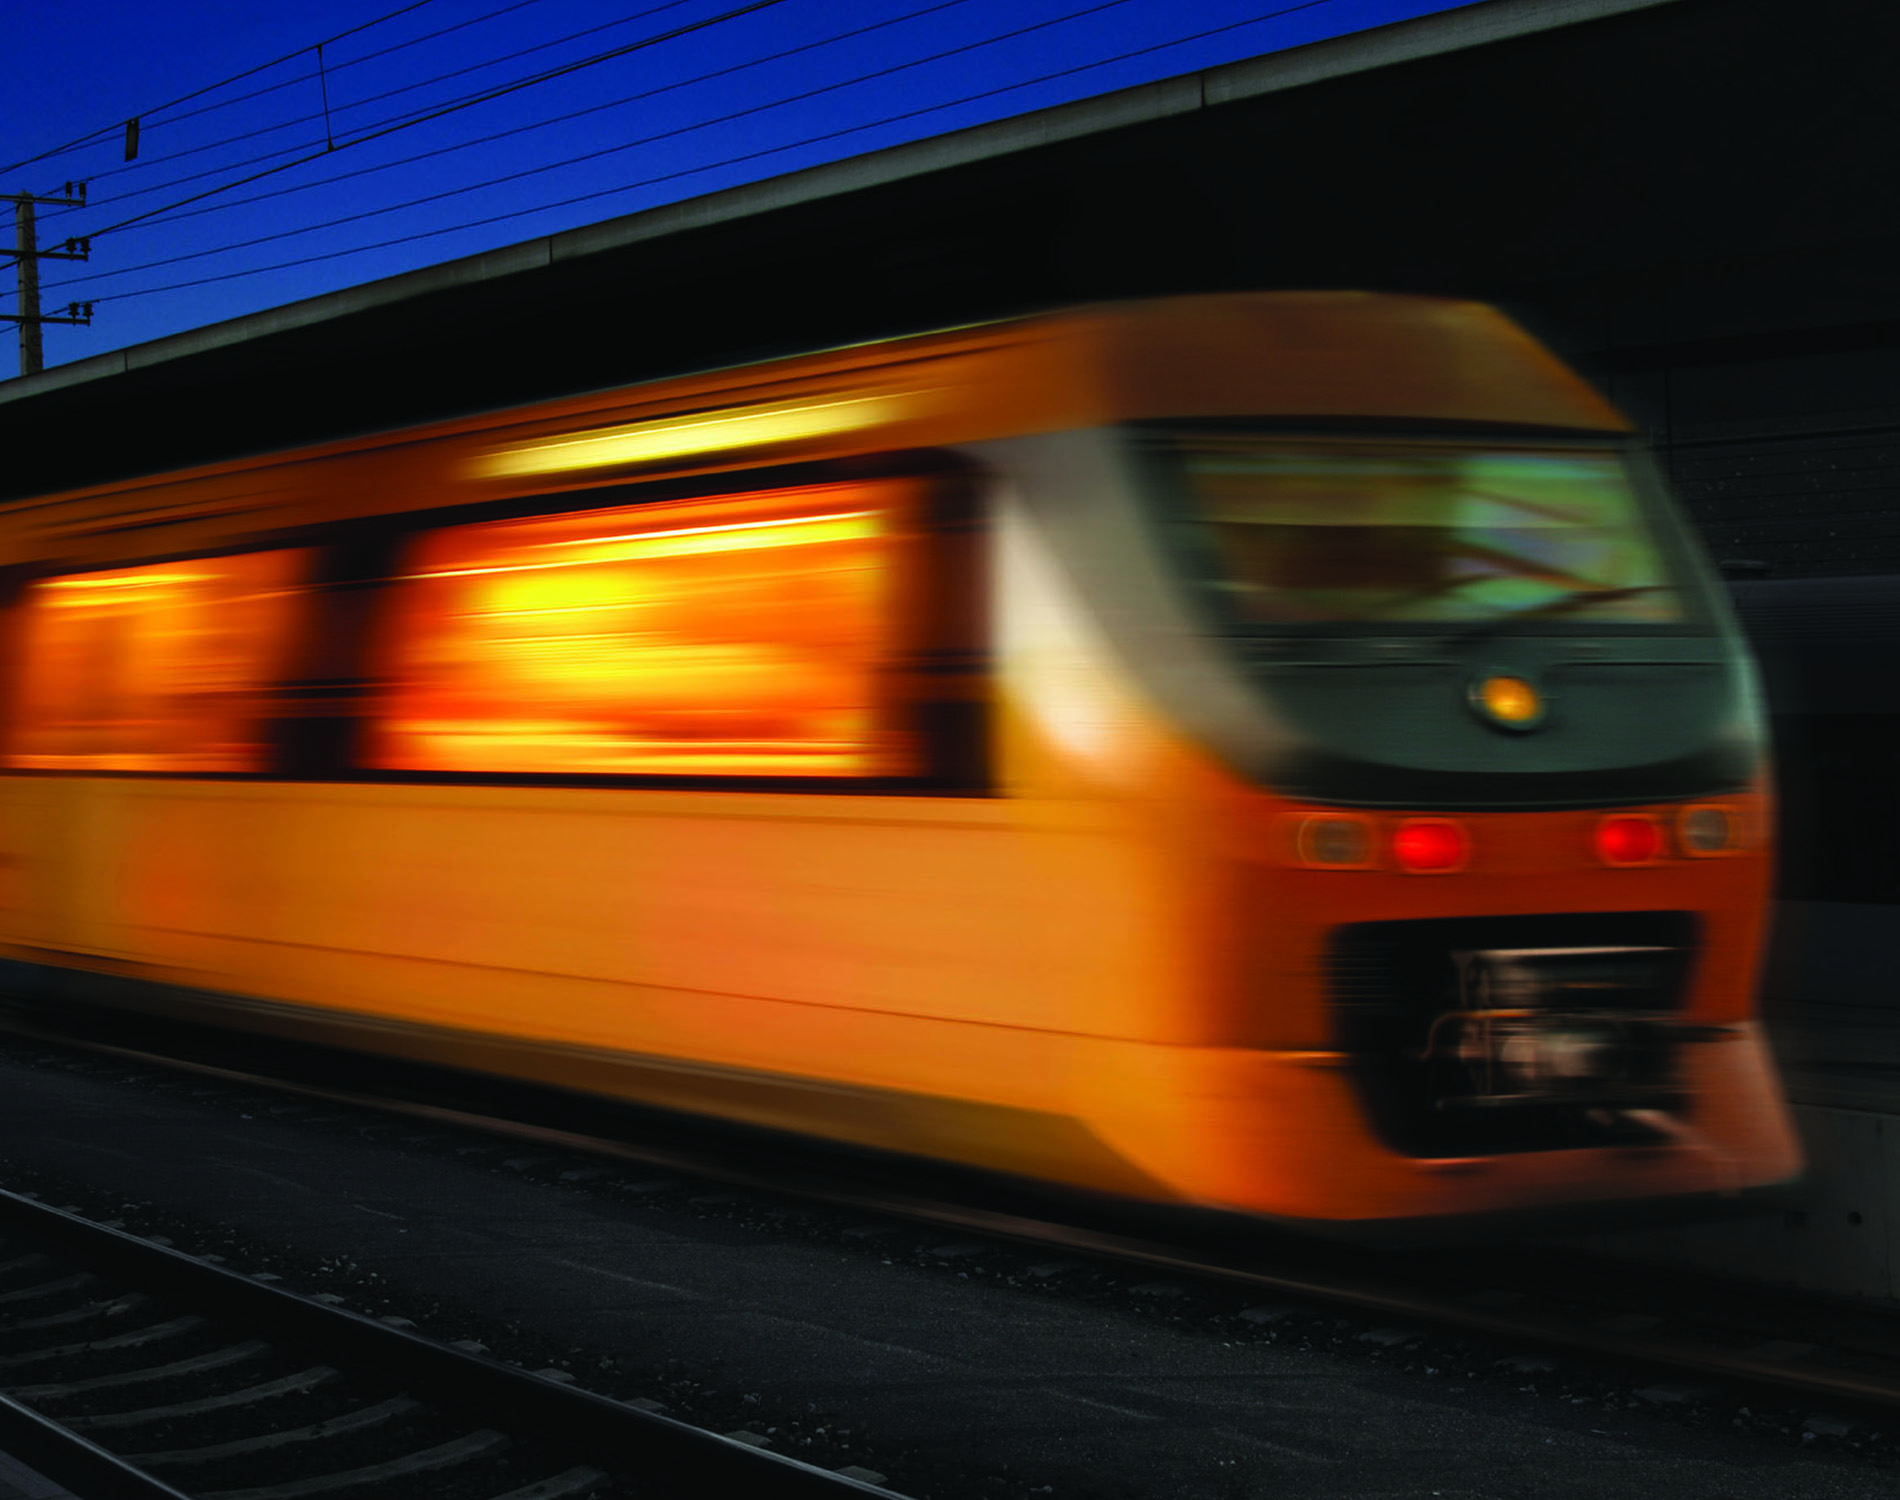 /-/media/images/website/background-images/industry-sectors/transportation/train.ashx?sc_lang=fr-fr